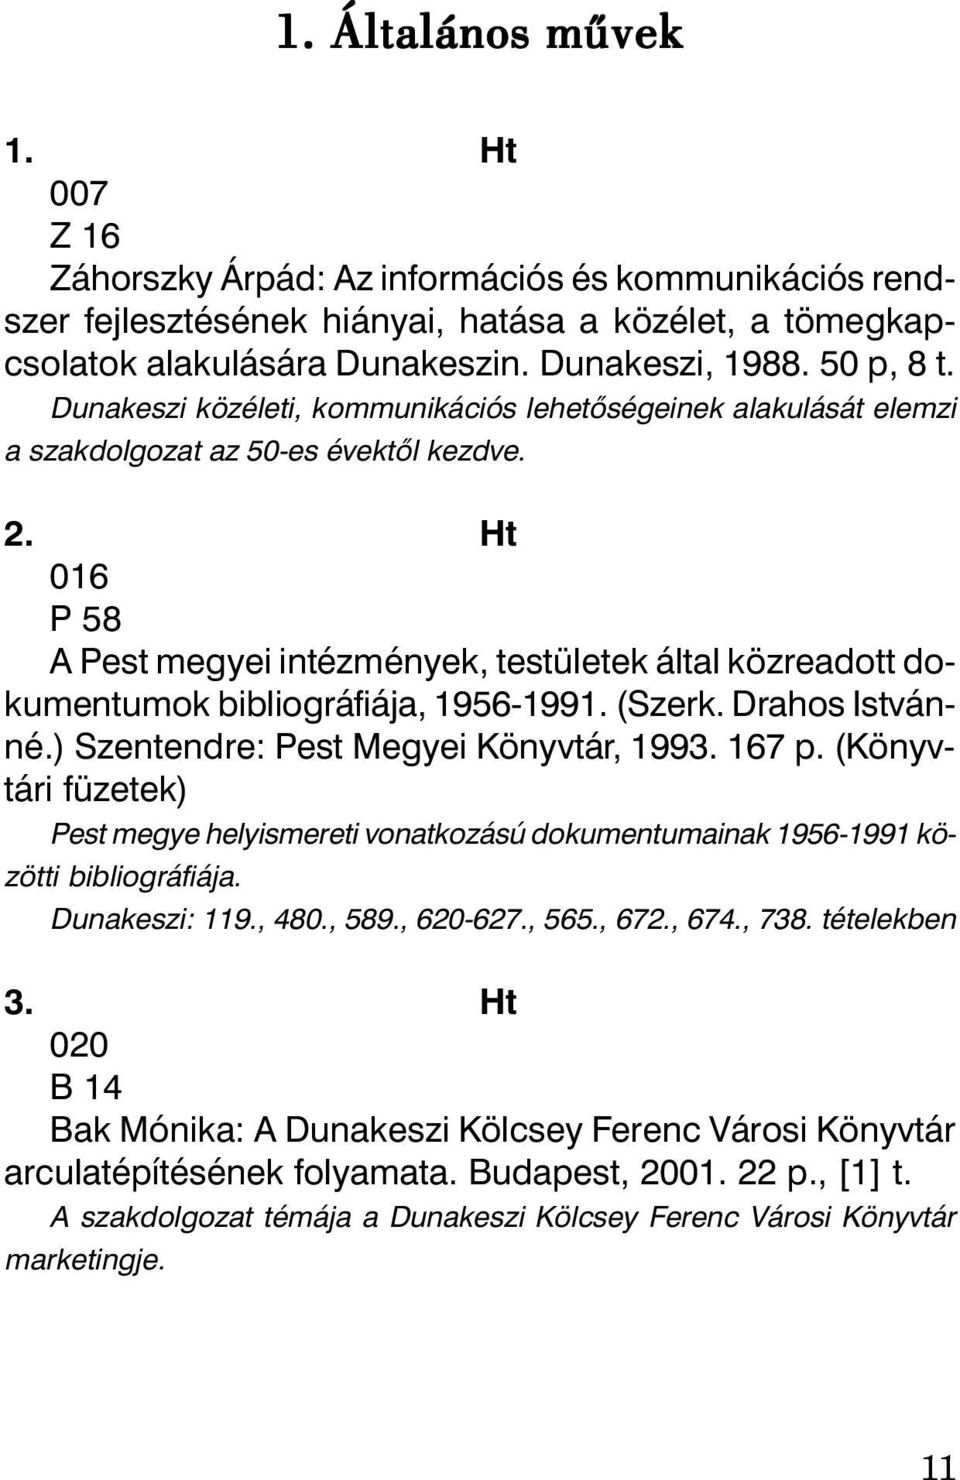 Ht 016 P 58 A Pest megyei intézmények, testületek által közreadott dokumentumok bibliográfiája, 1956-1991. (Szerk. Drahos Istvánné.) Szentendre: Pest Megyei Könyvtár, 1993. 167 p.